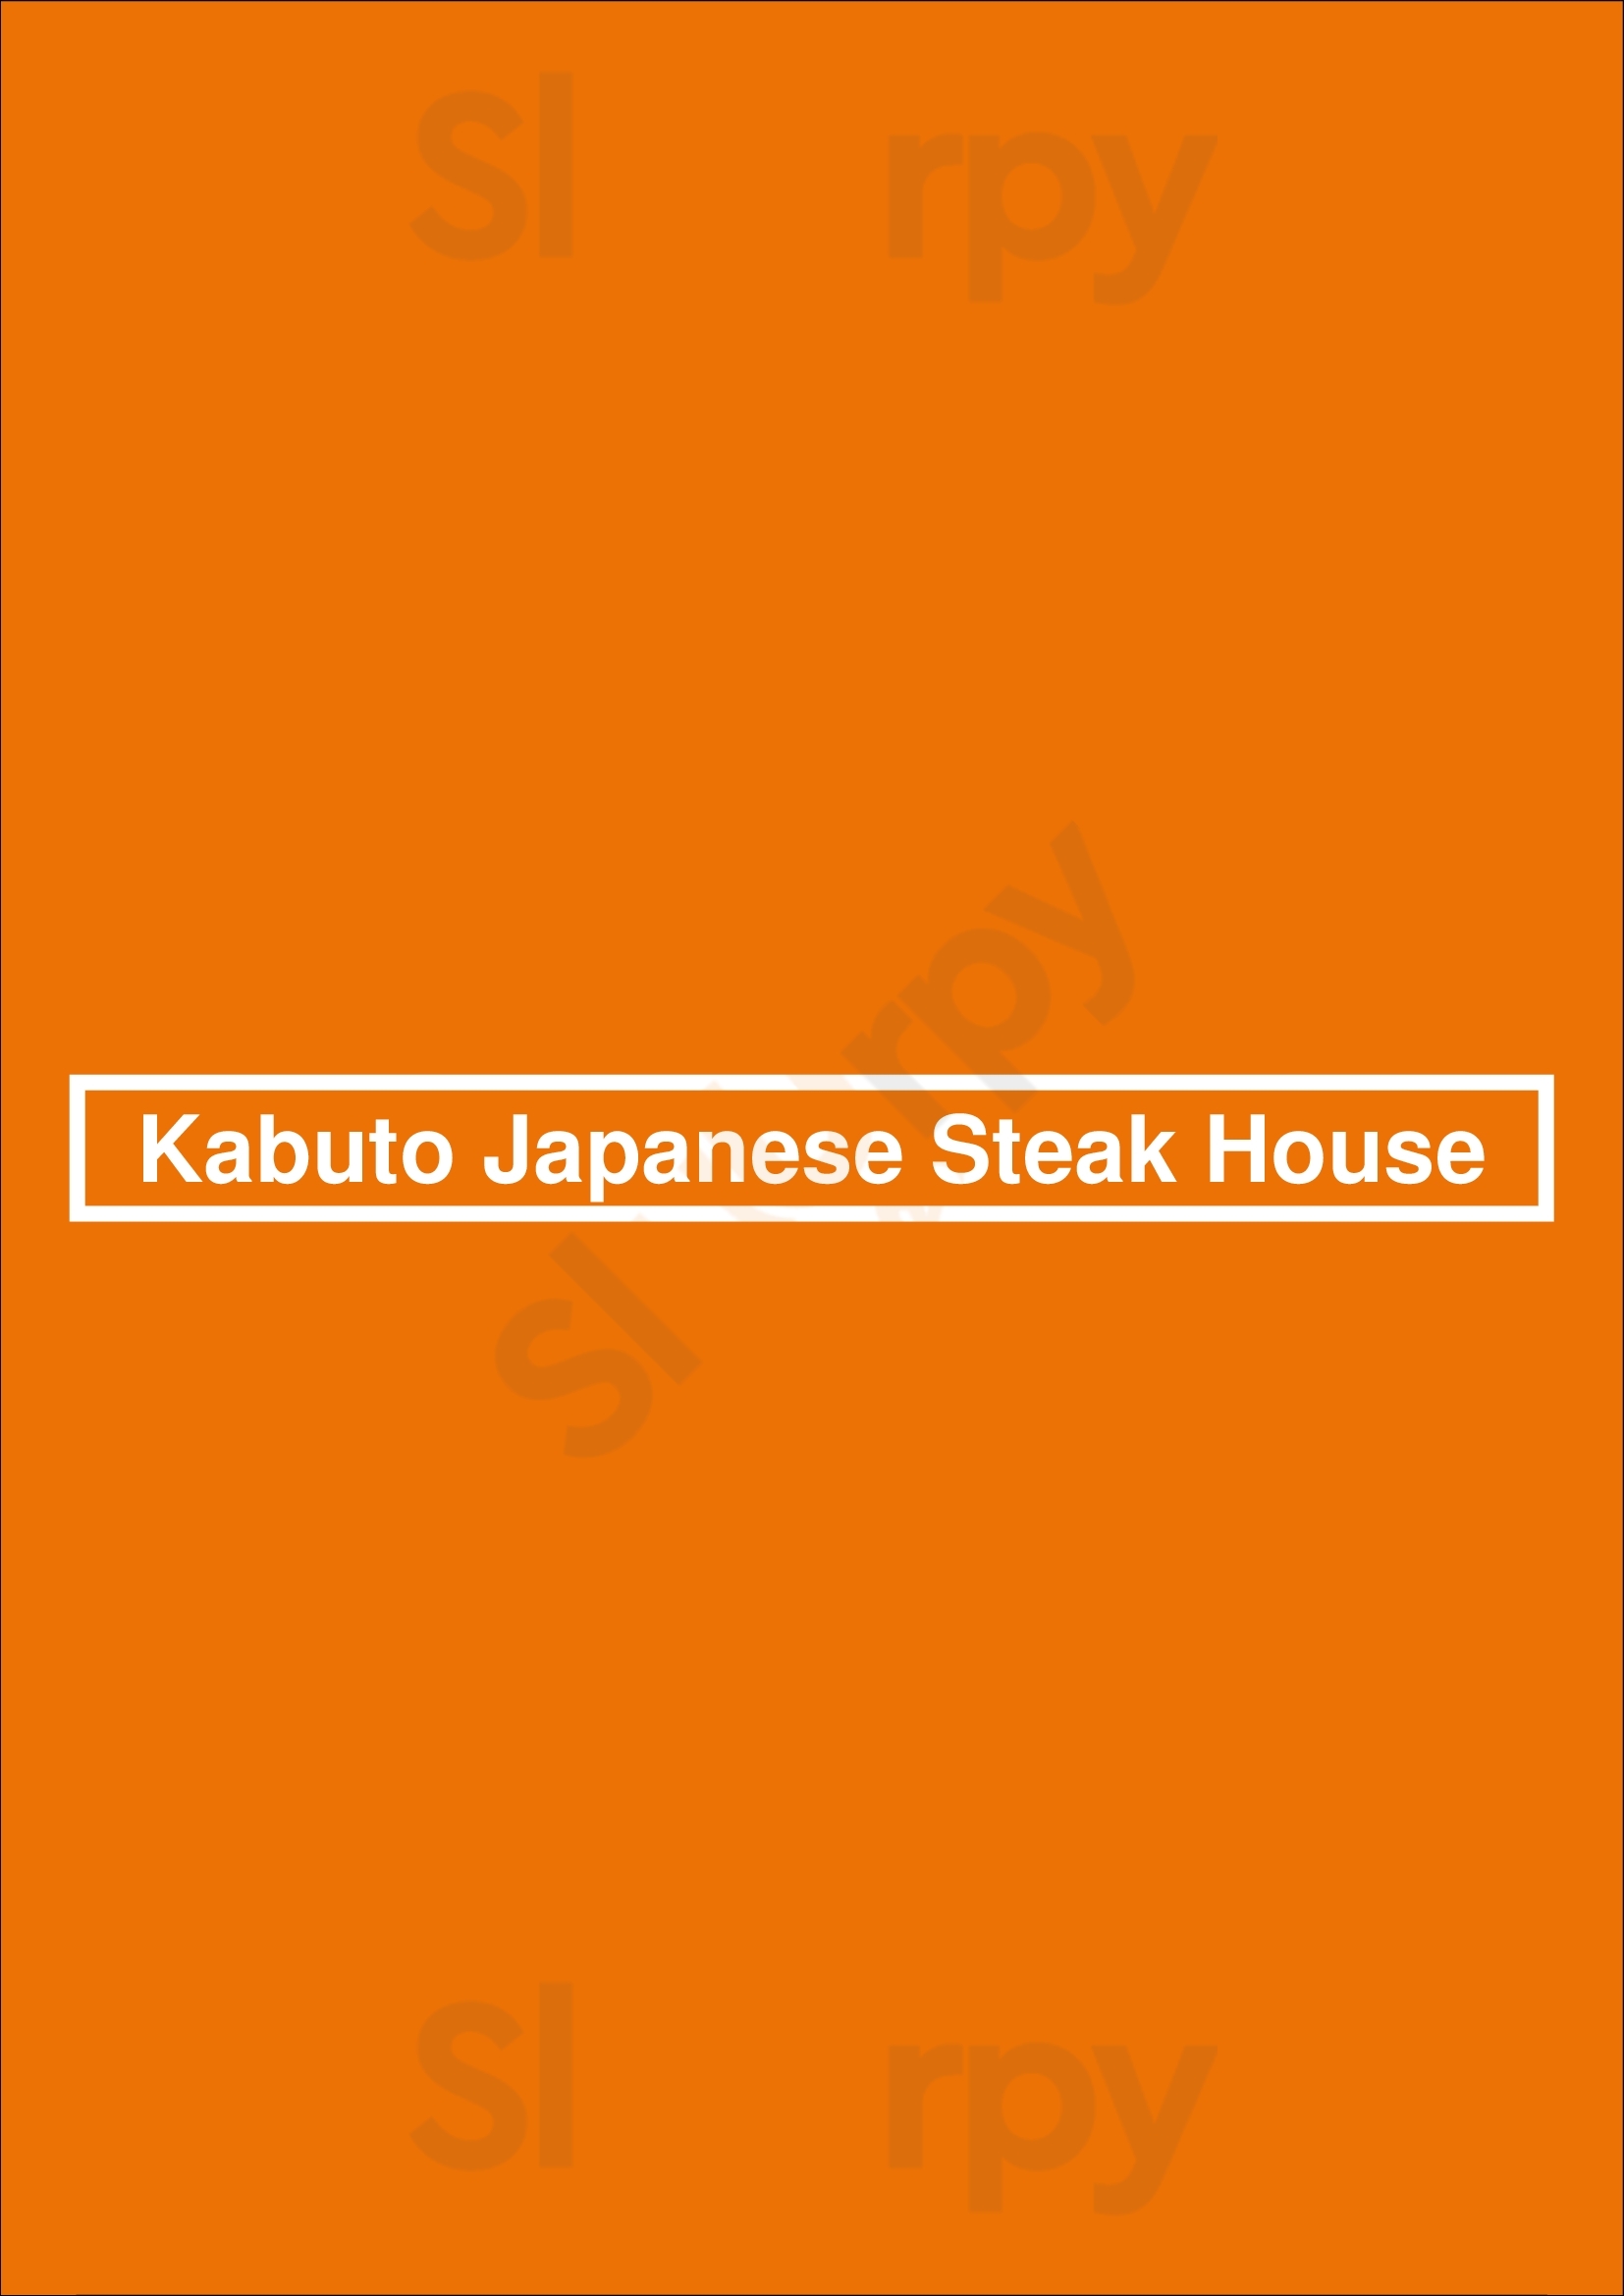 Kabuto Japanese Steak House Charlotte Menu - 1